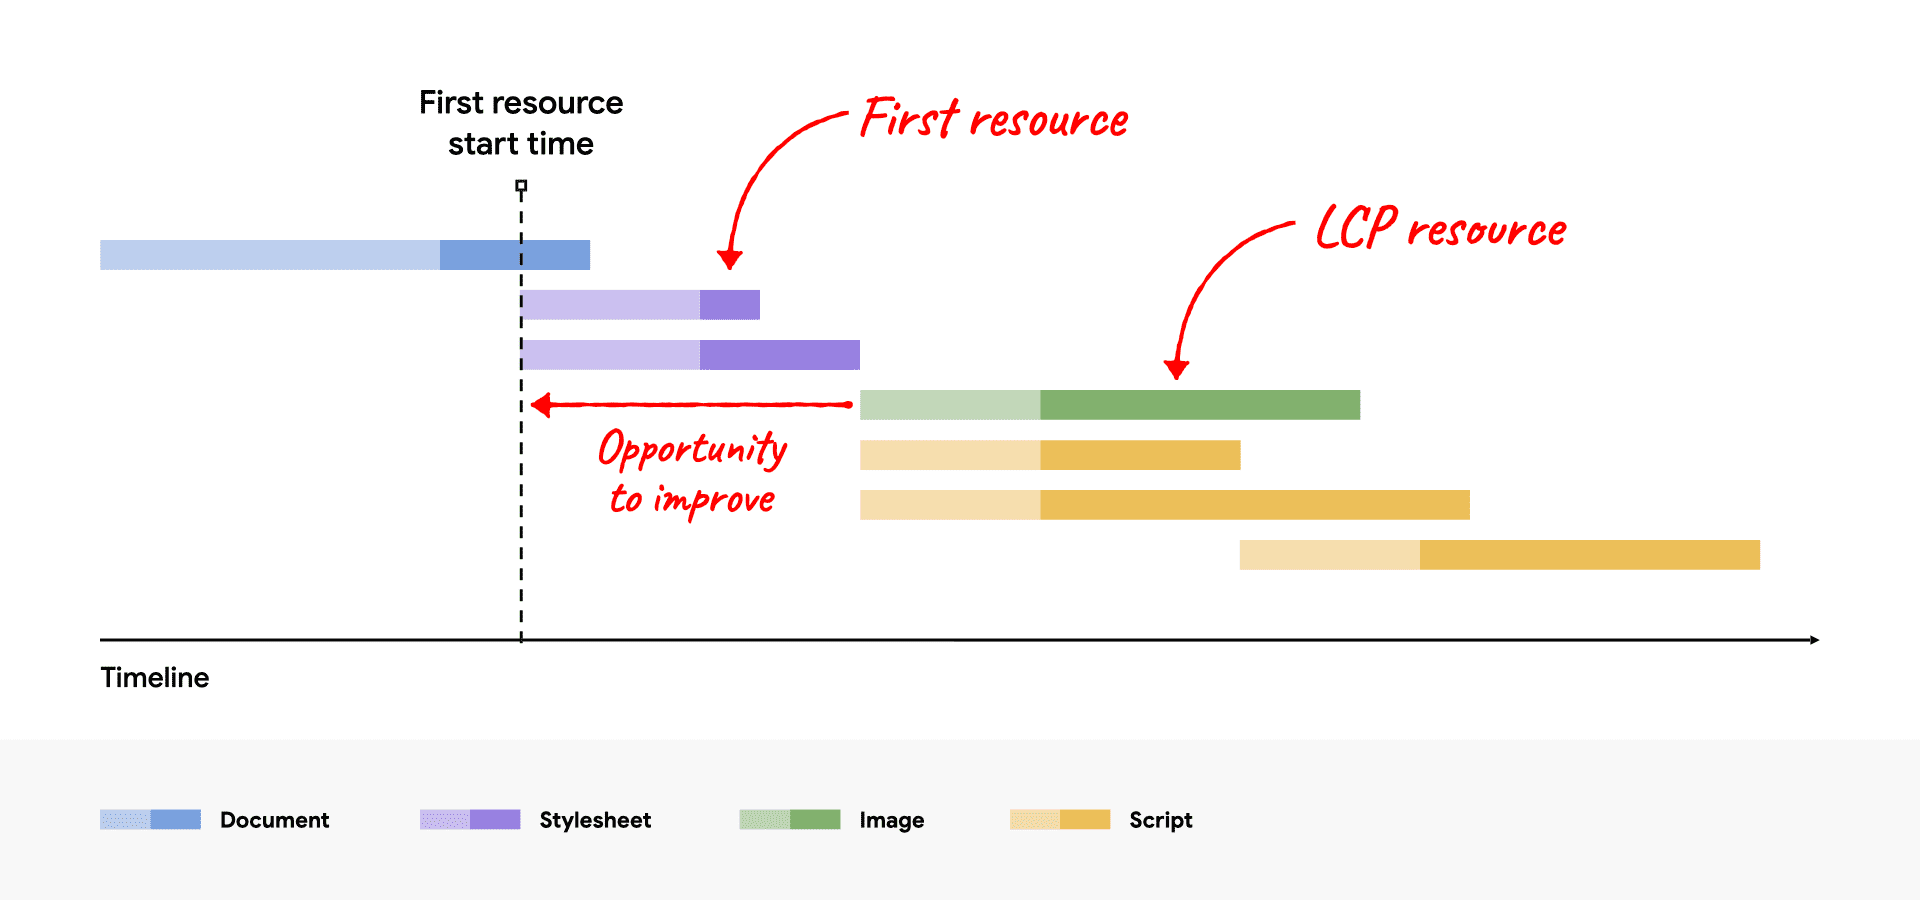 网络瀑布流示意图，显示了在第一个资源之后启动的 LCP 资源，显示了改进机会